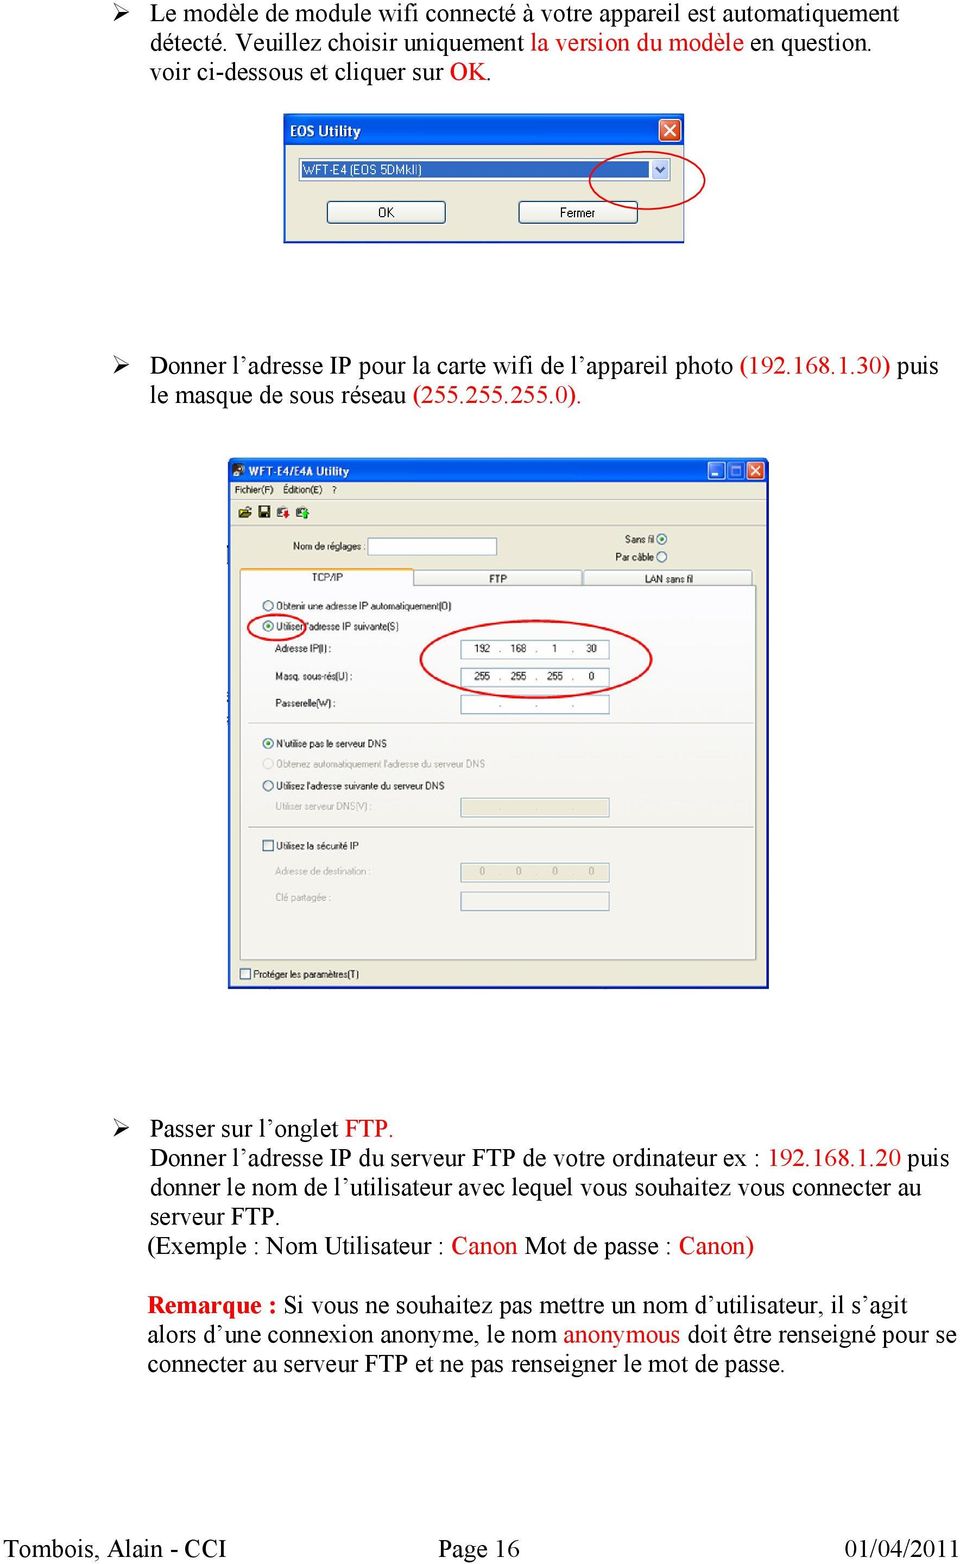 Donner l adresse IP du serveur FTP de votre ordinateur ex : 192.168.1.20 puis donner le nom de l utilisateur avec lequel vous souhaitez vous connecter au serveur FTP.